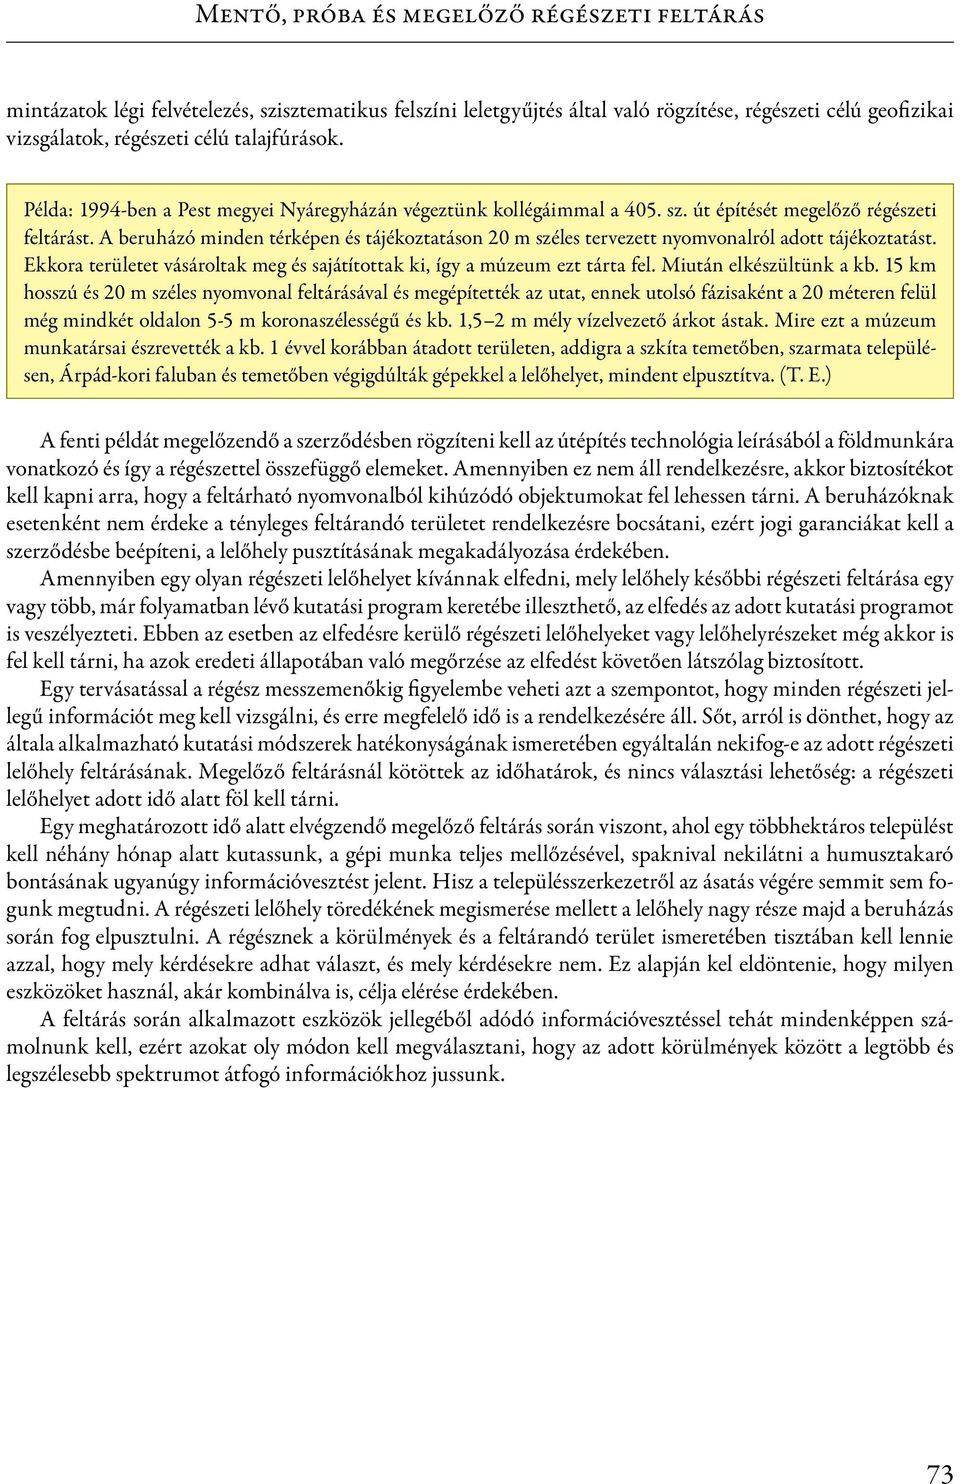 Pusztai Tamás Tari Edit 2.1. Mentő, próba és megelőző régészeti feltárás -  PDF Ingyenes letöltés